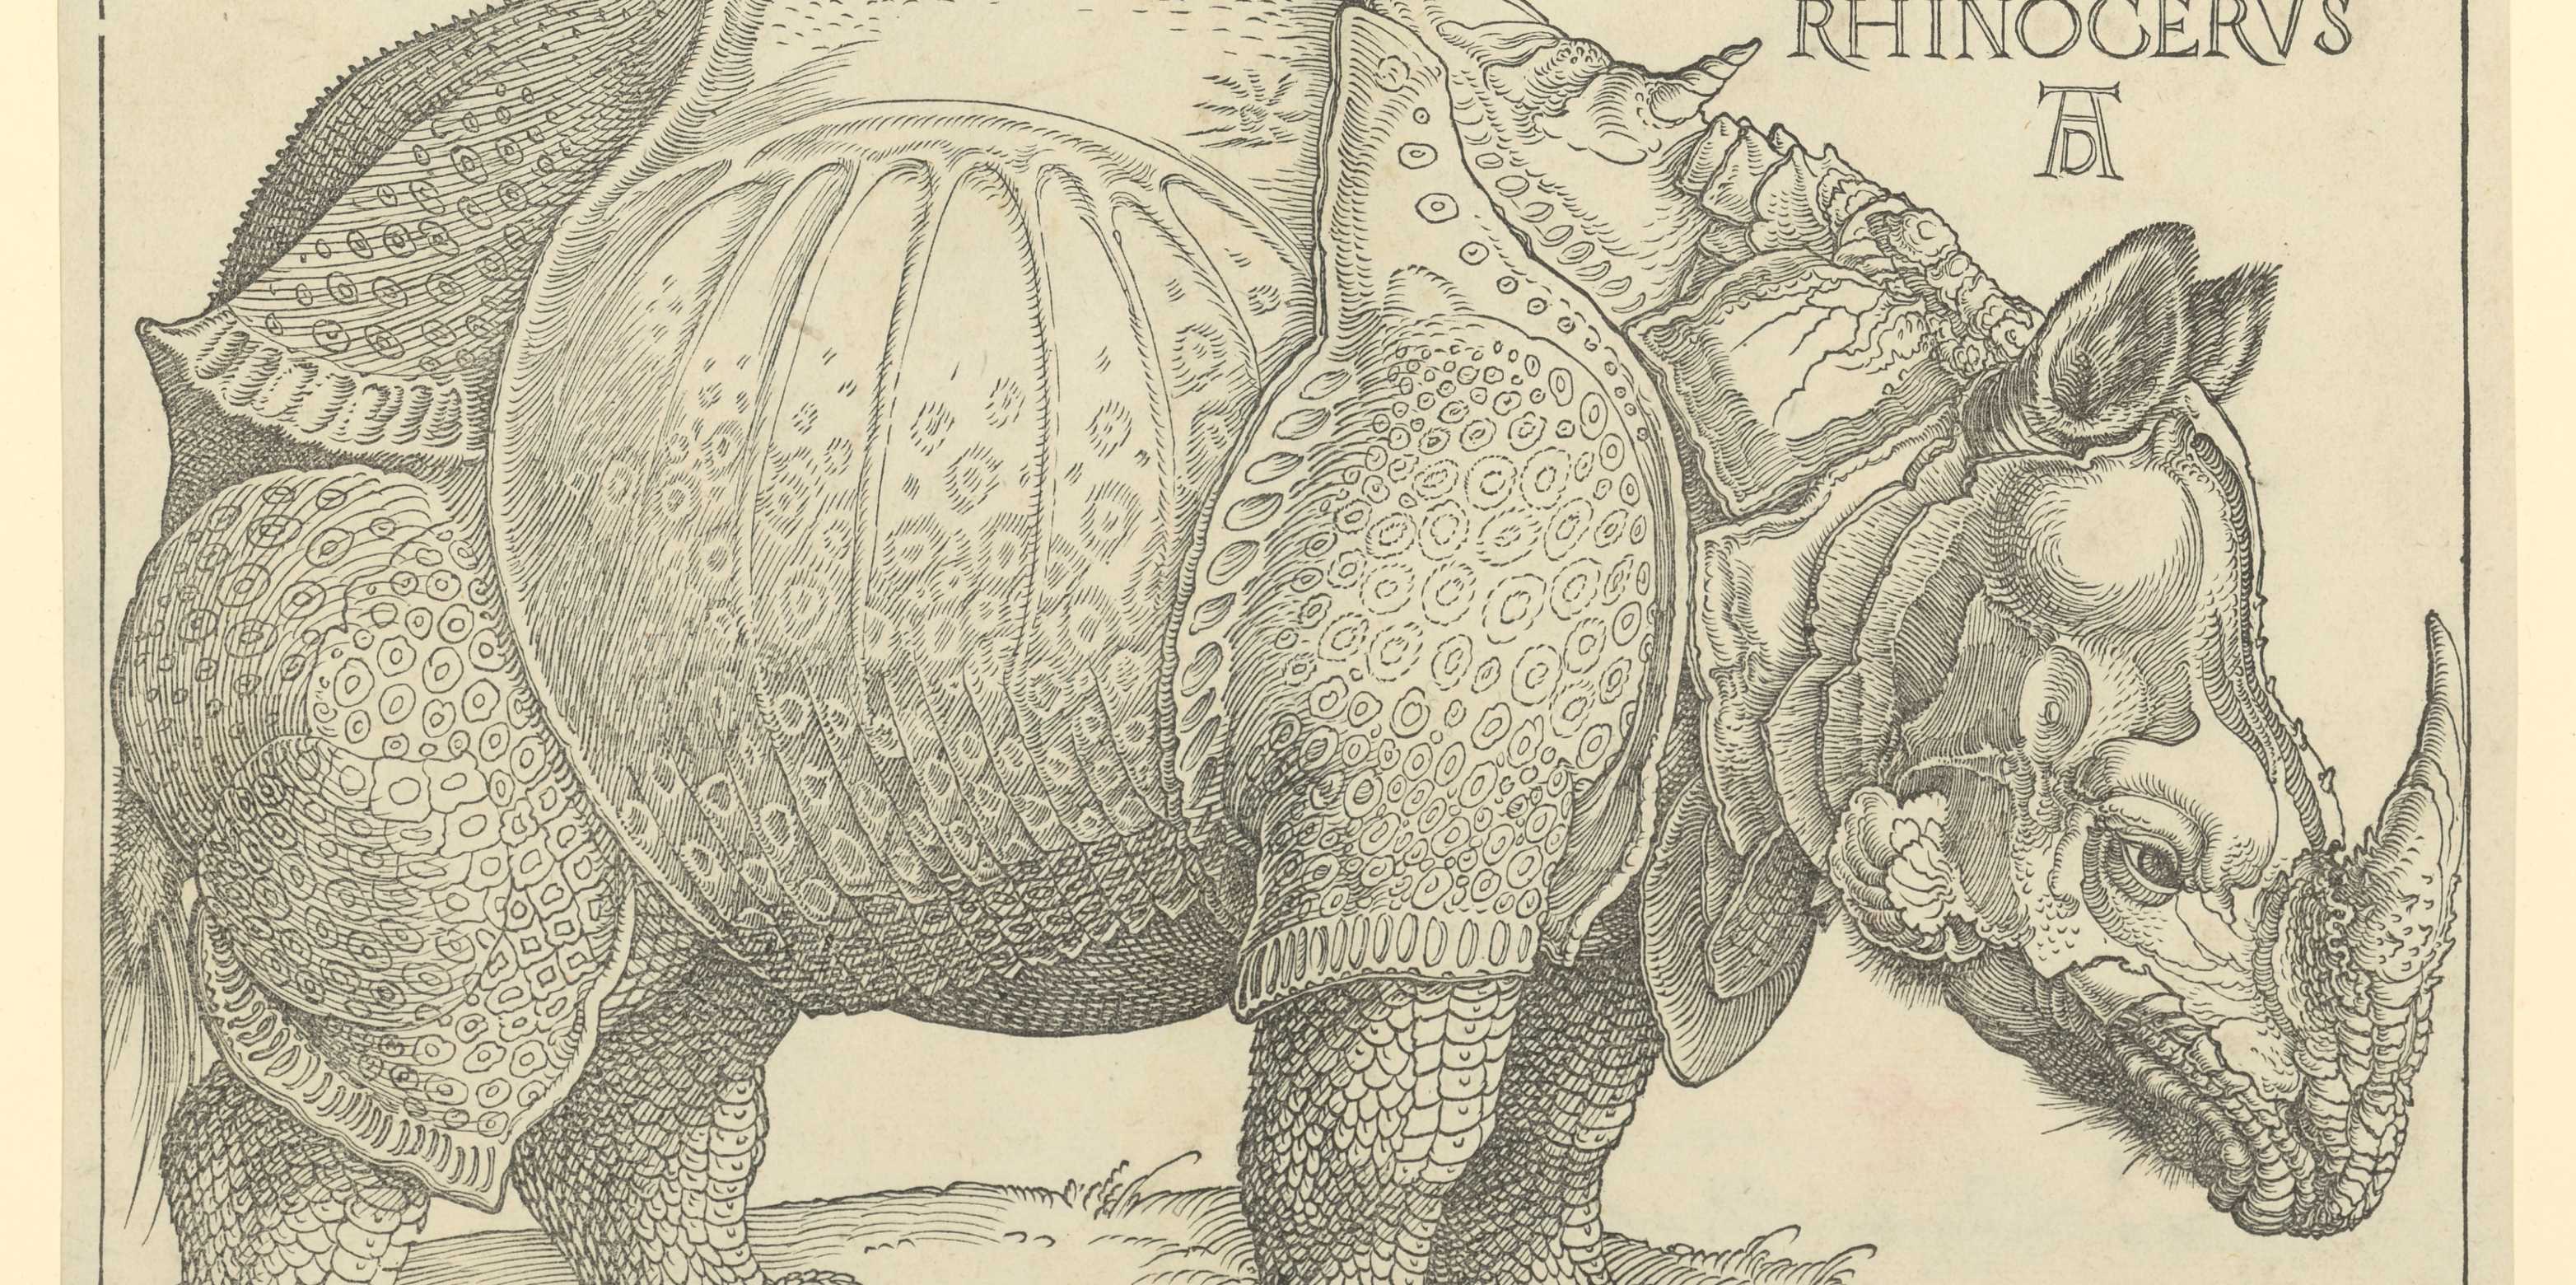 ALBRECHT DÜRER (1471–1528) Rhinocerus, 1515